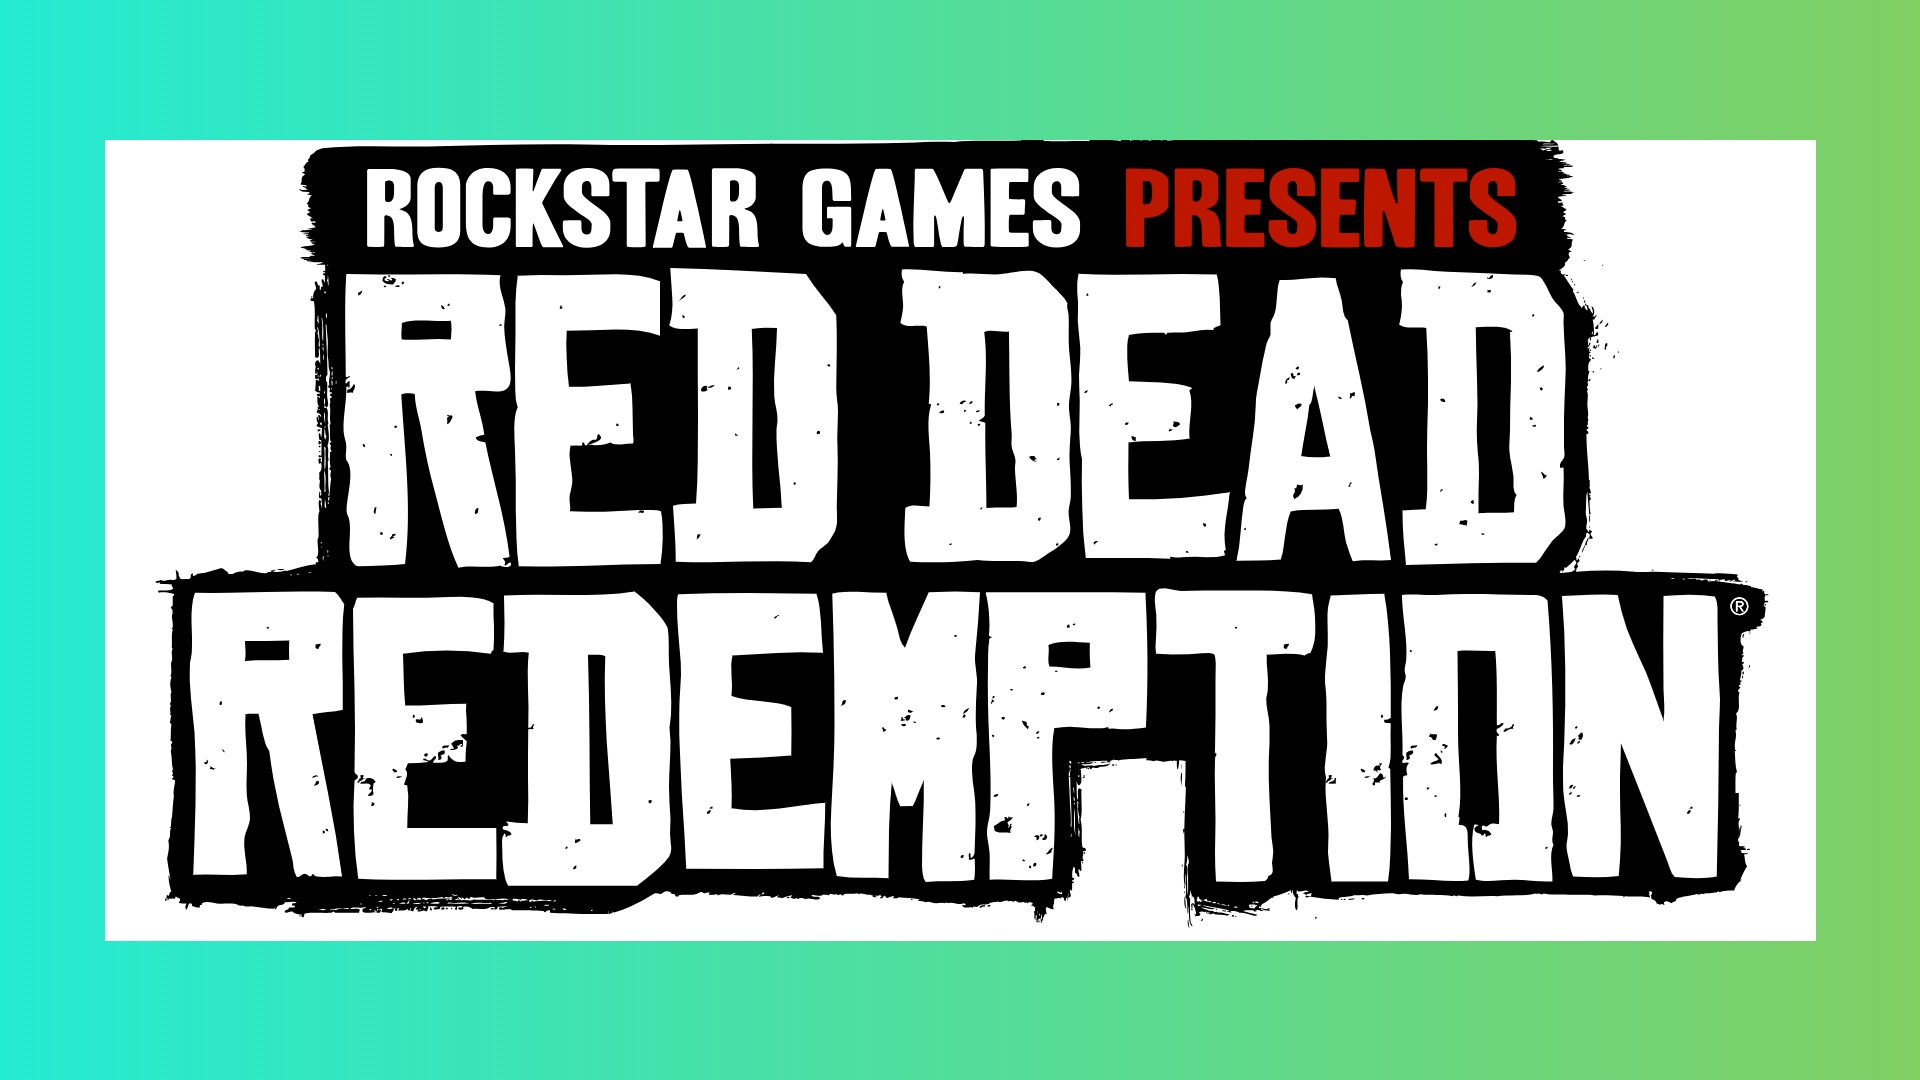 Red Dead Redemption remake: A logo for Rockstar western game RDR